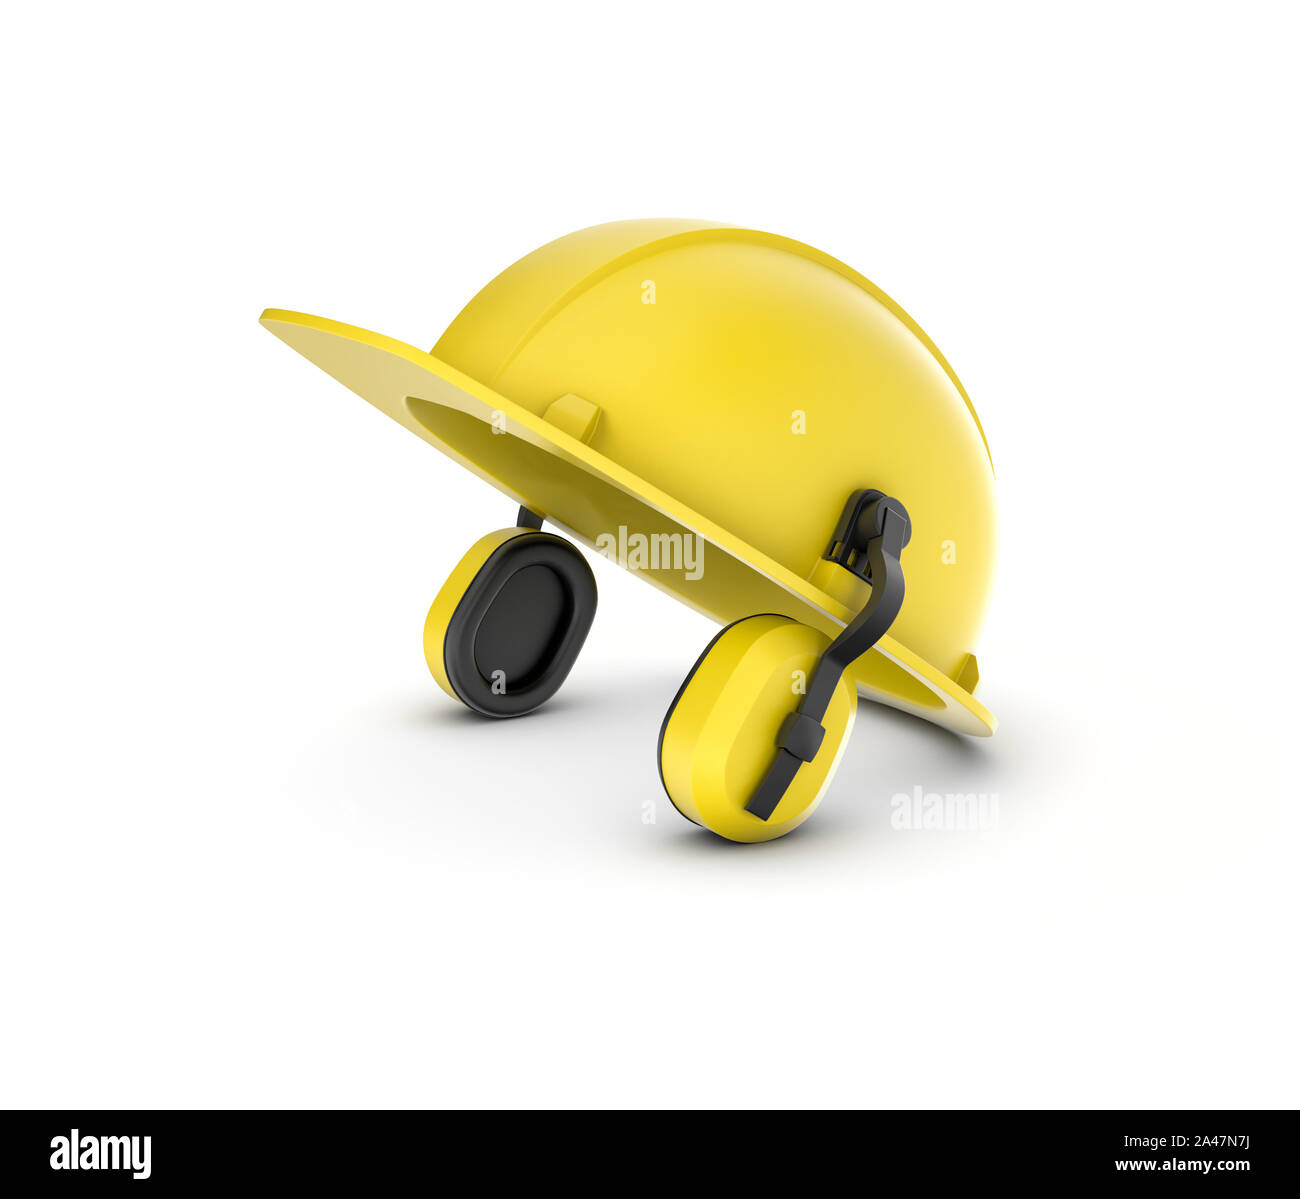 3D-Rendering von einem gelben Helm mit Kopfhörern auf weißem Hintergrund. Bau und Konstruktion. Sicherheit am Arbeitsplatz. Uniform. Stockfoto